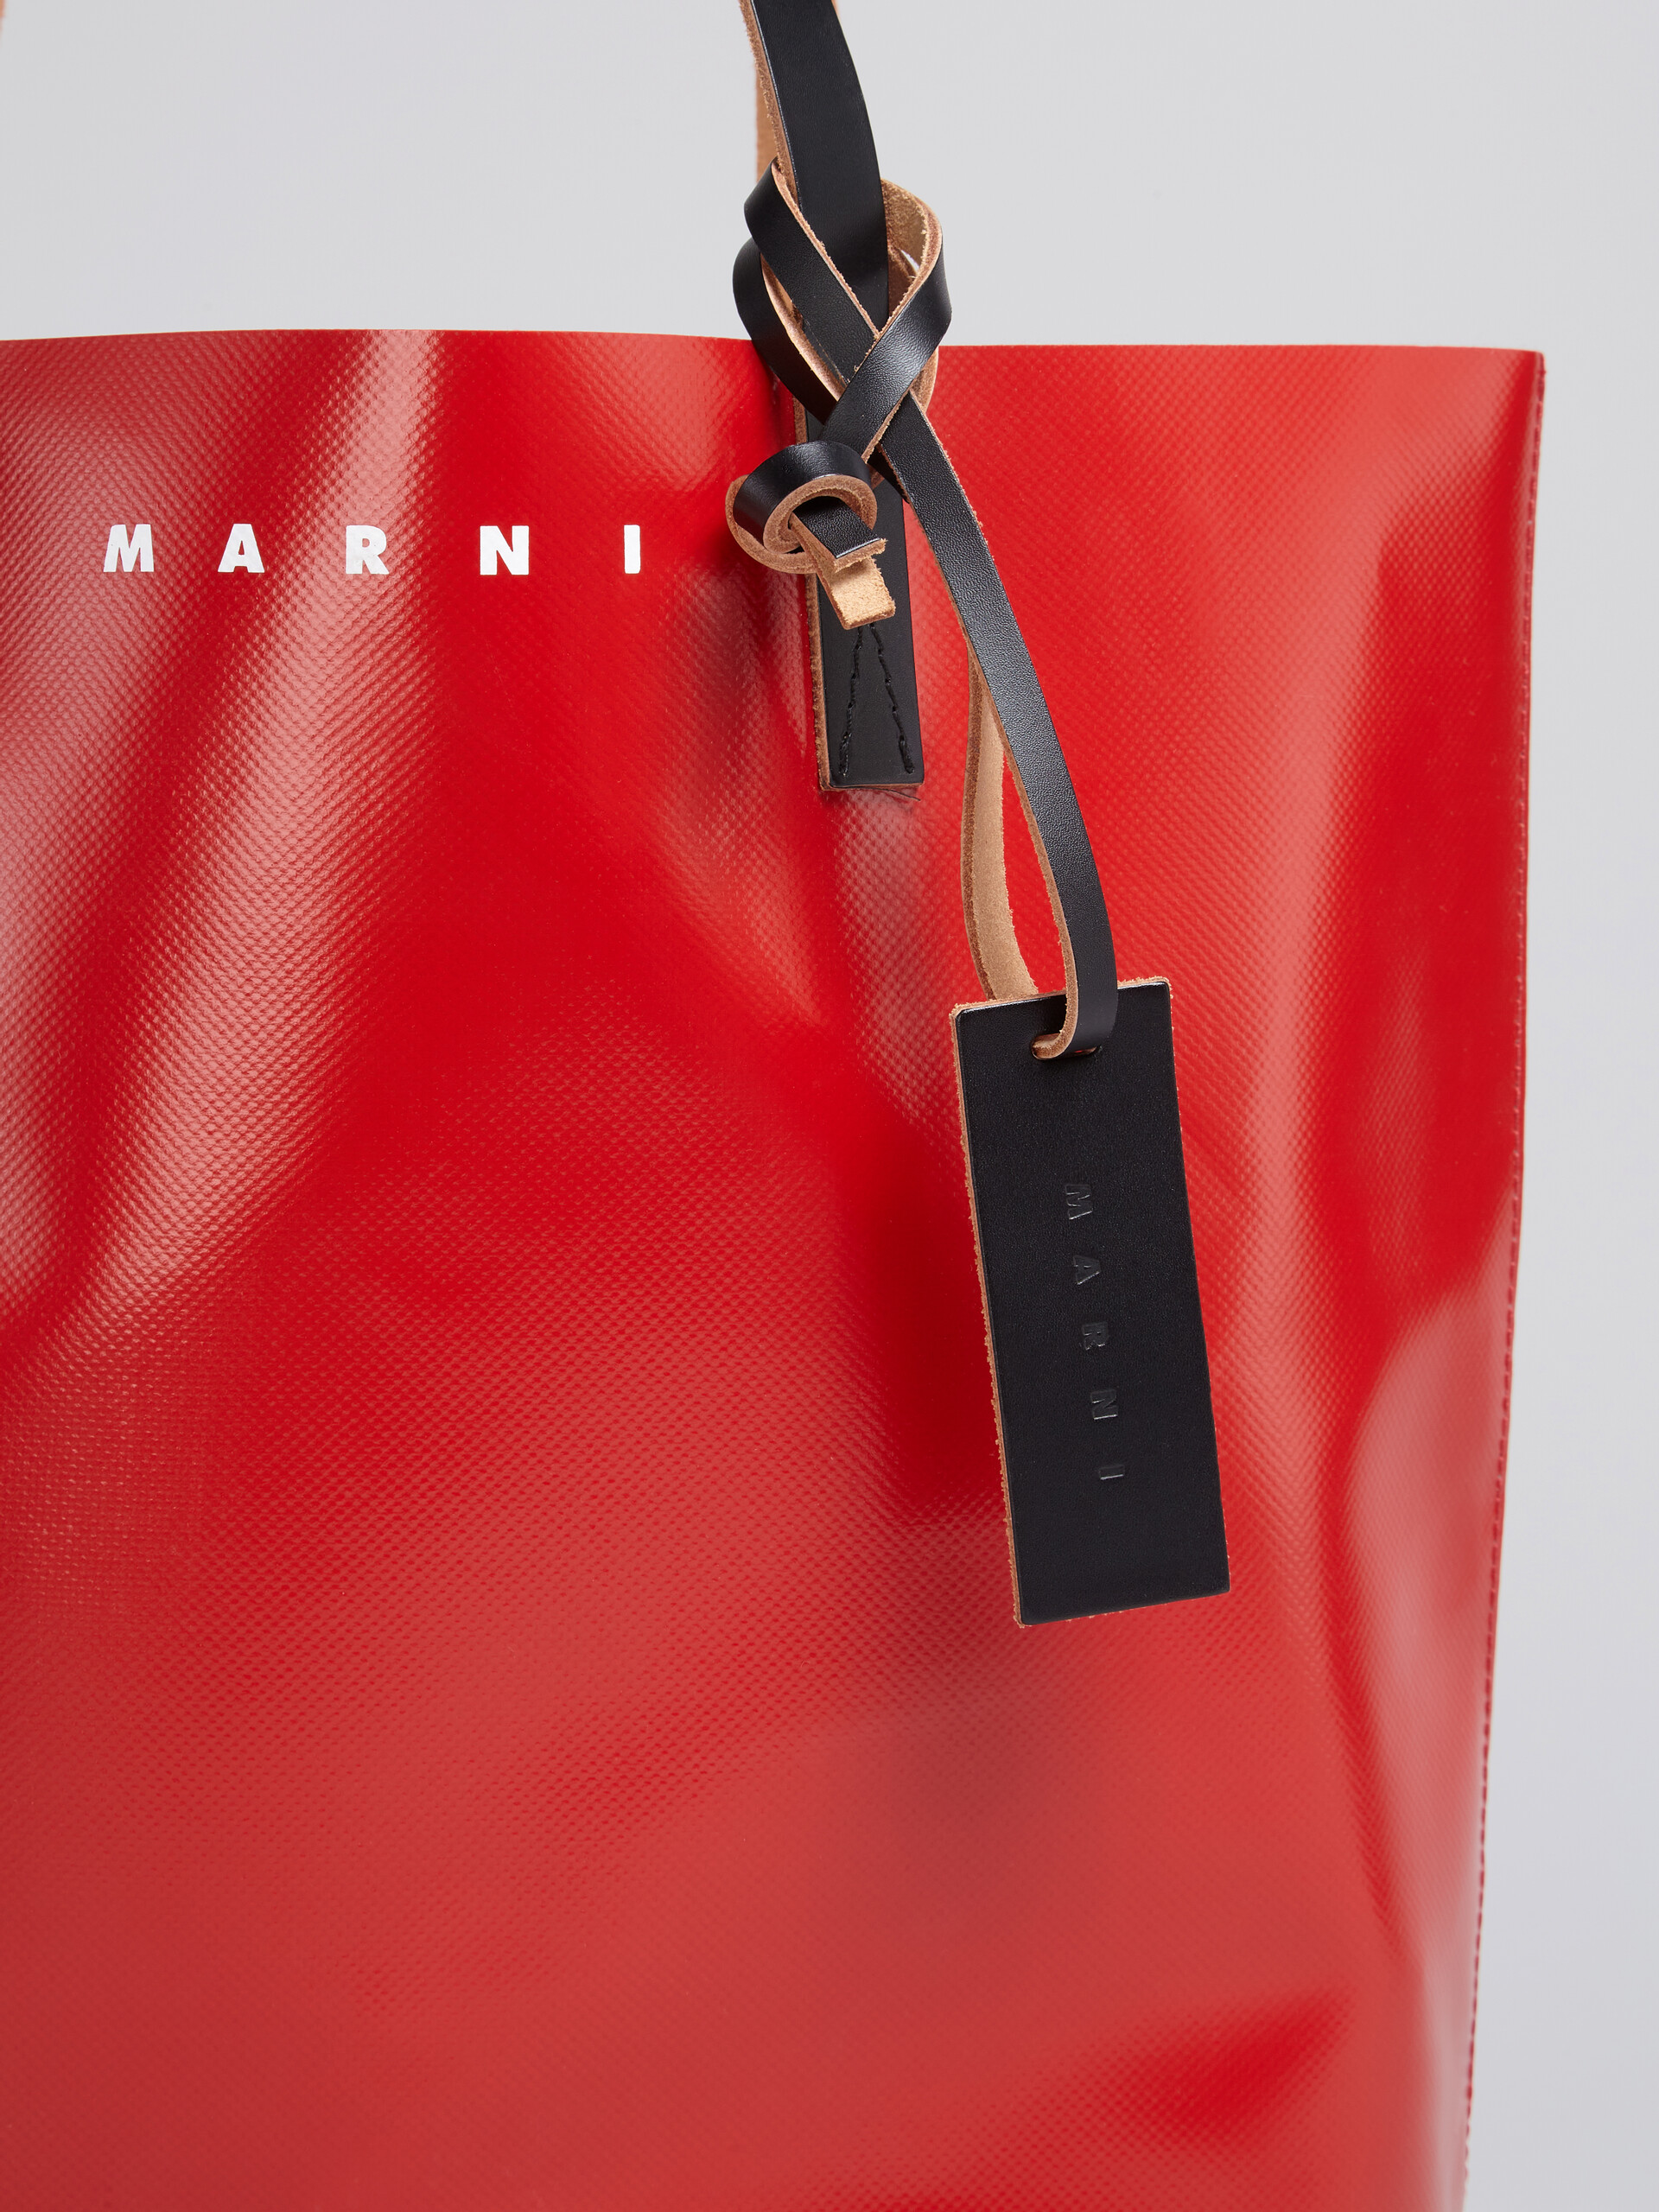 Borsa shopping in PVC rosso e grigio con manici in pelle - Borse shopping - Image 4